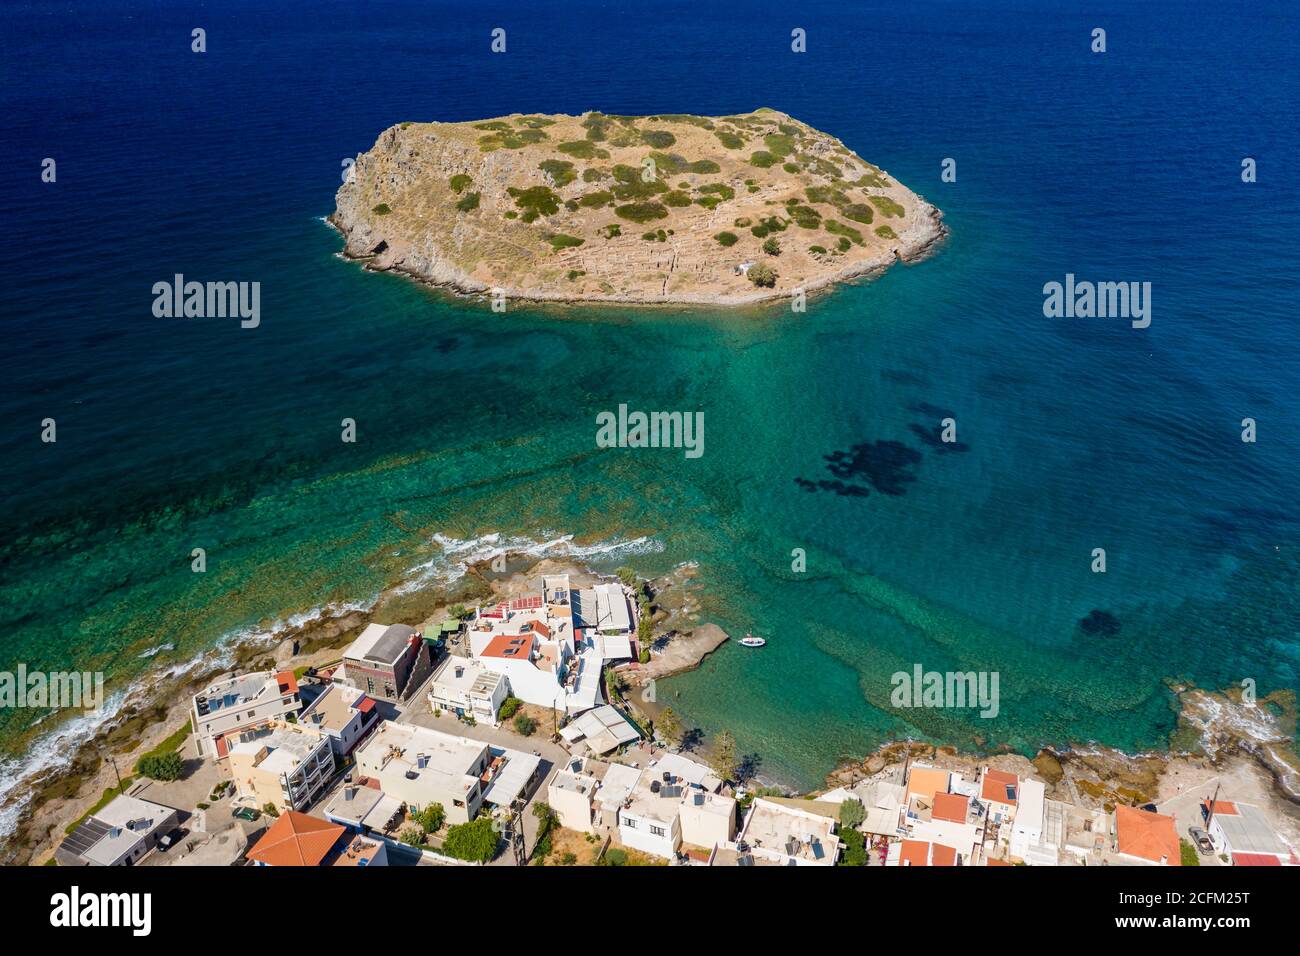 Vue aérienne du village pittoresque de Mochlos et des ruines minoaires anciennes sur une île (Mochlos, Crète, Grèce) Banque D'Images